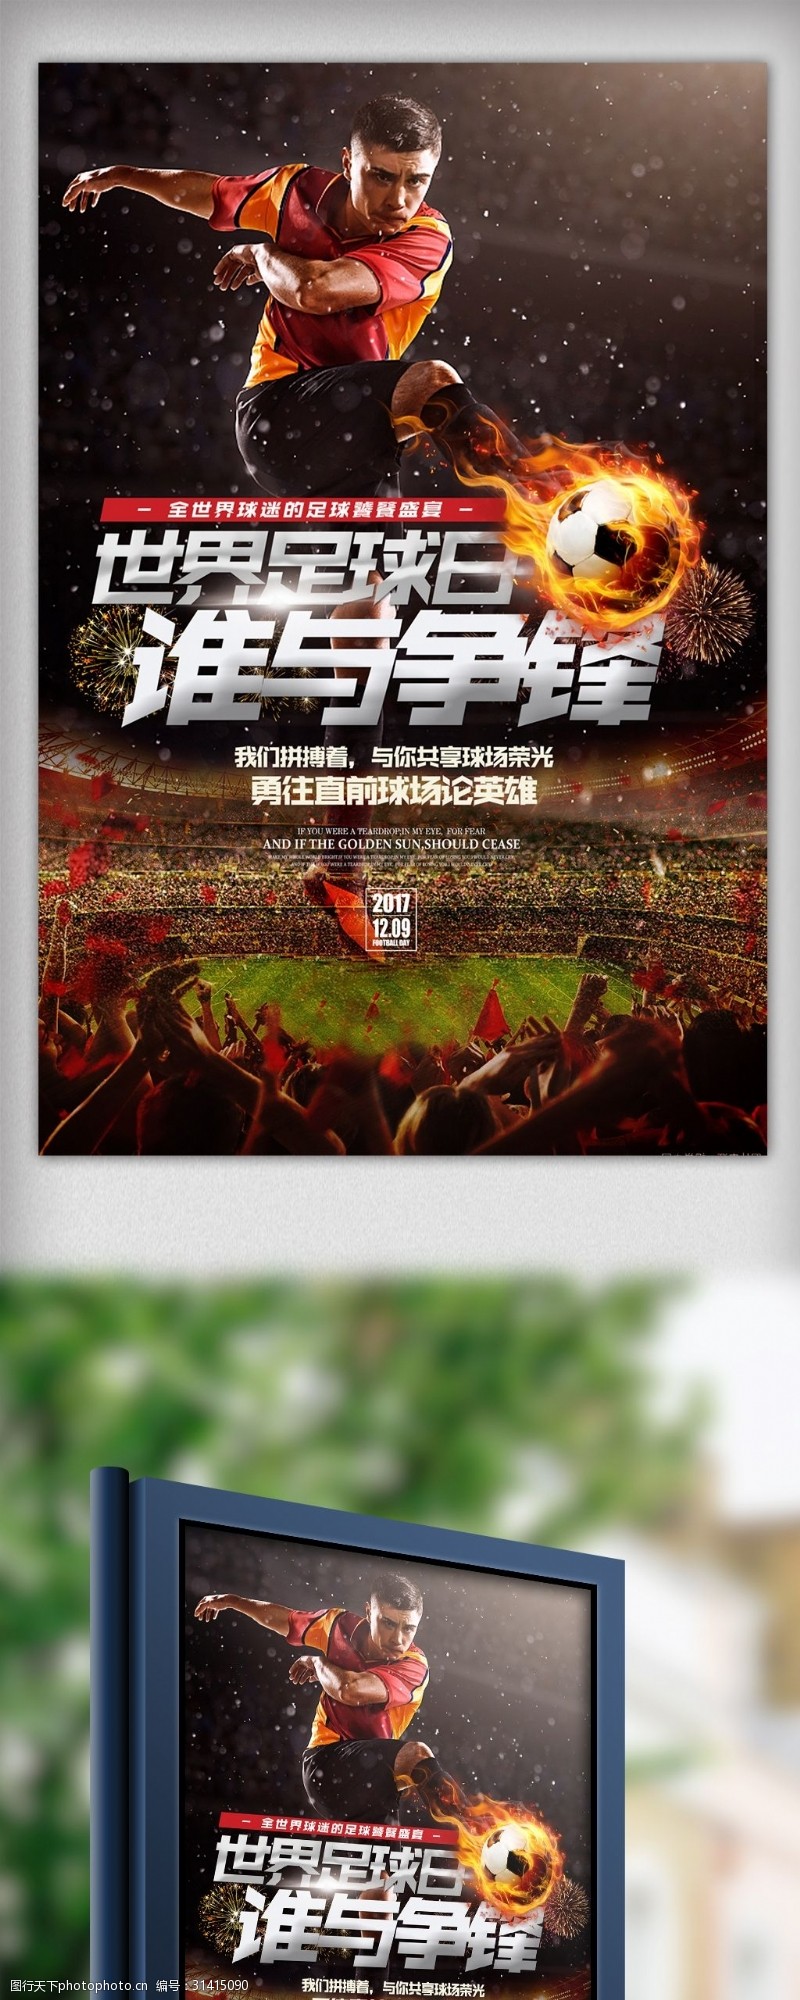 足球对决酷炫黑金2018世界杯体育宣传海报设计模板